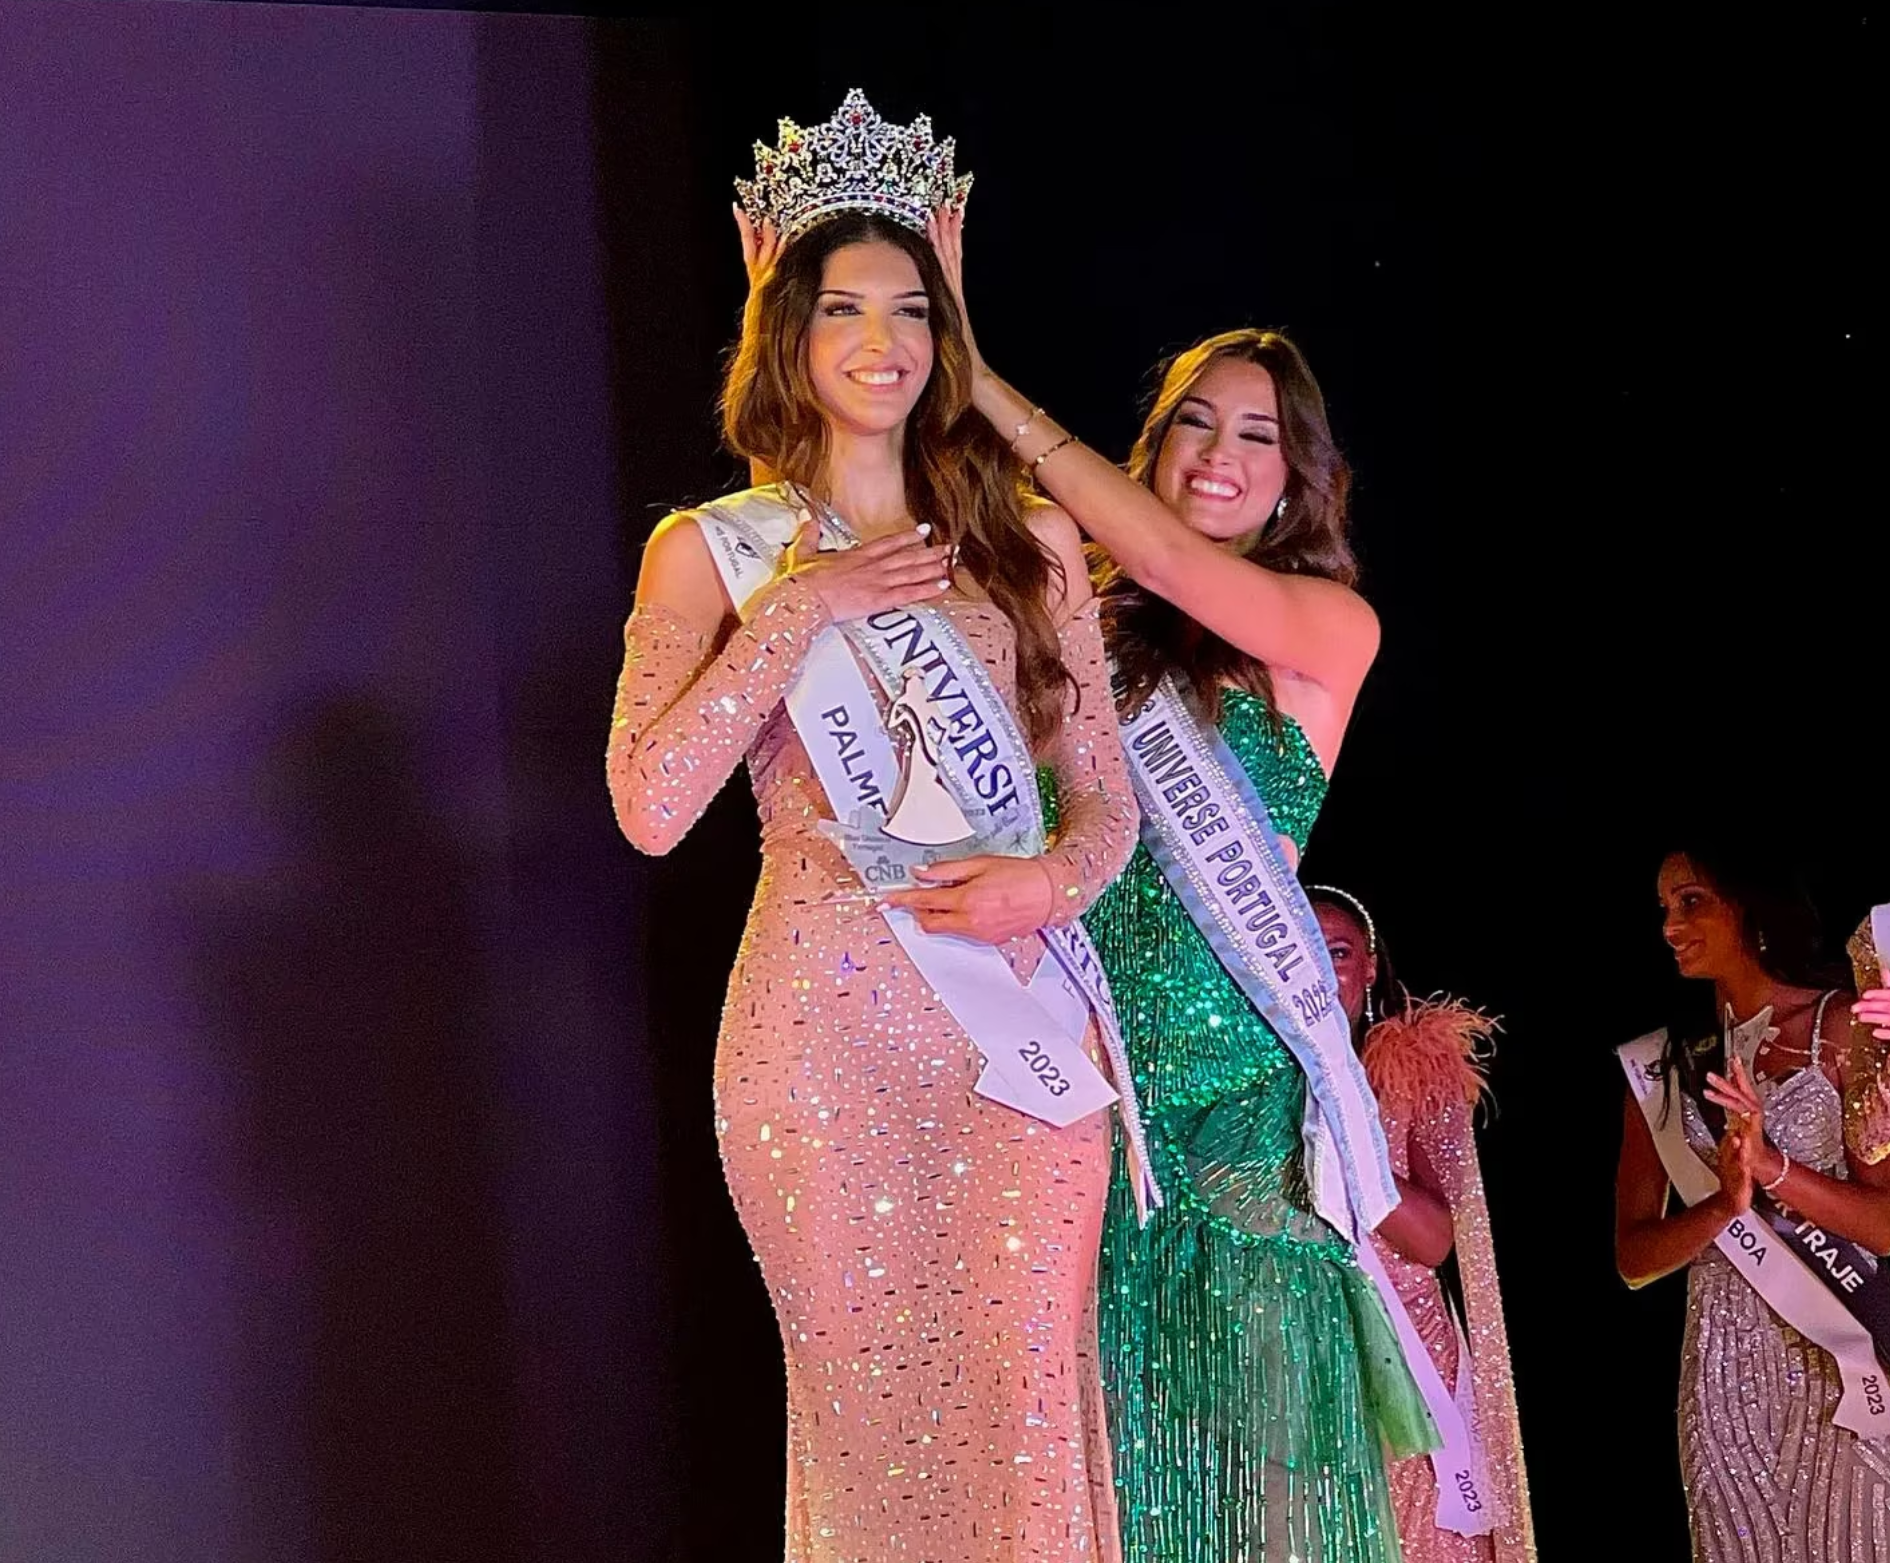 Una mujer trans ganó por primera vez el concurso Miss Portugal.